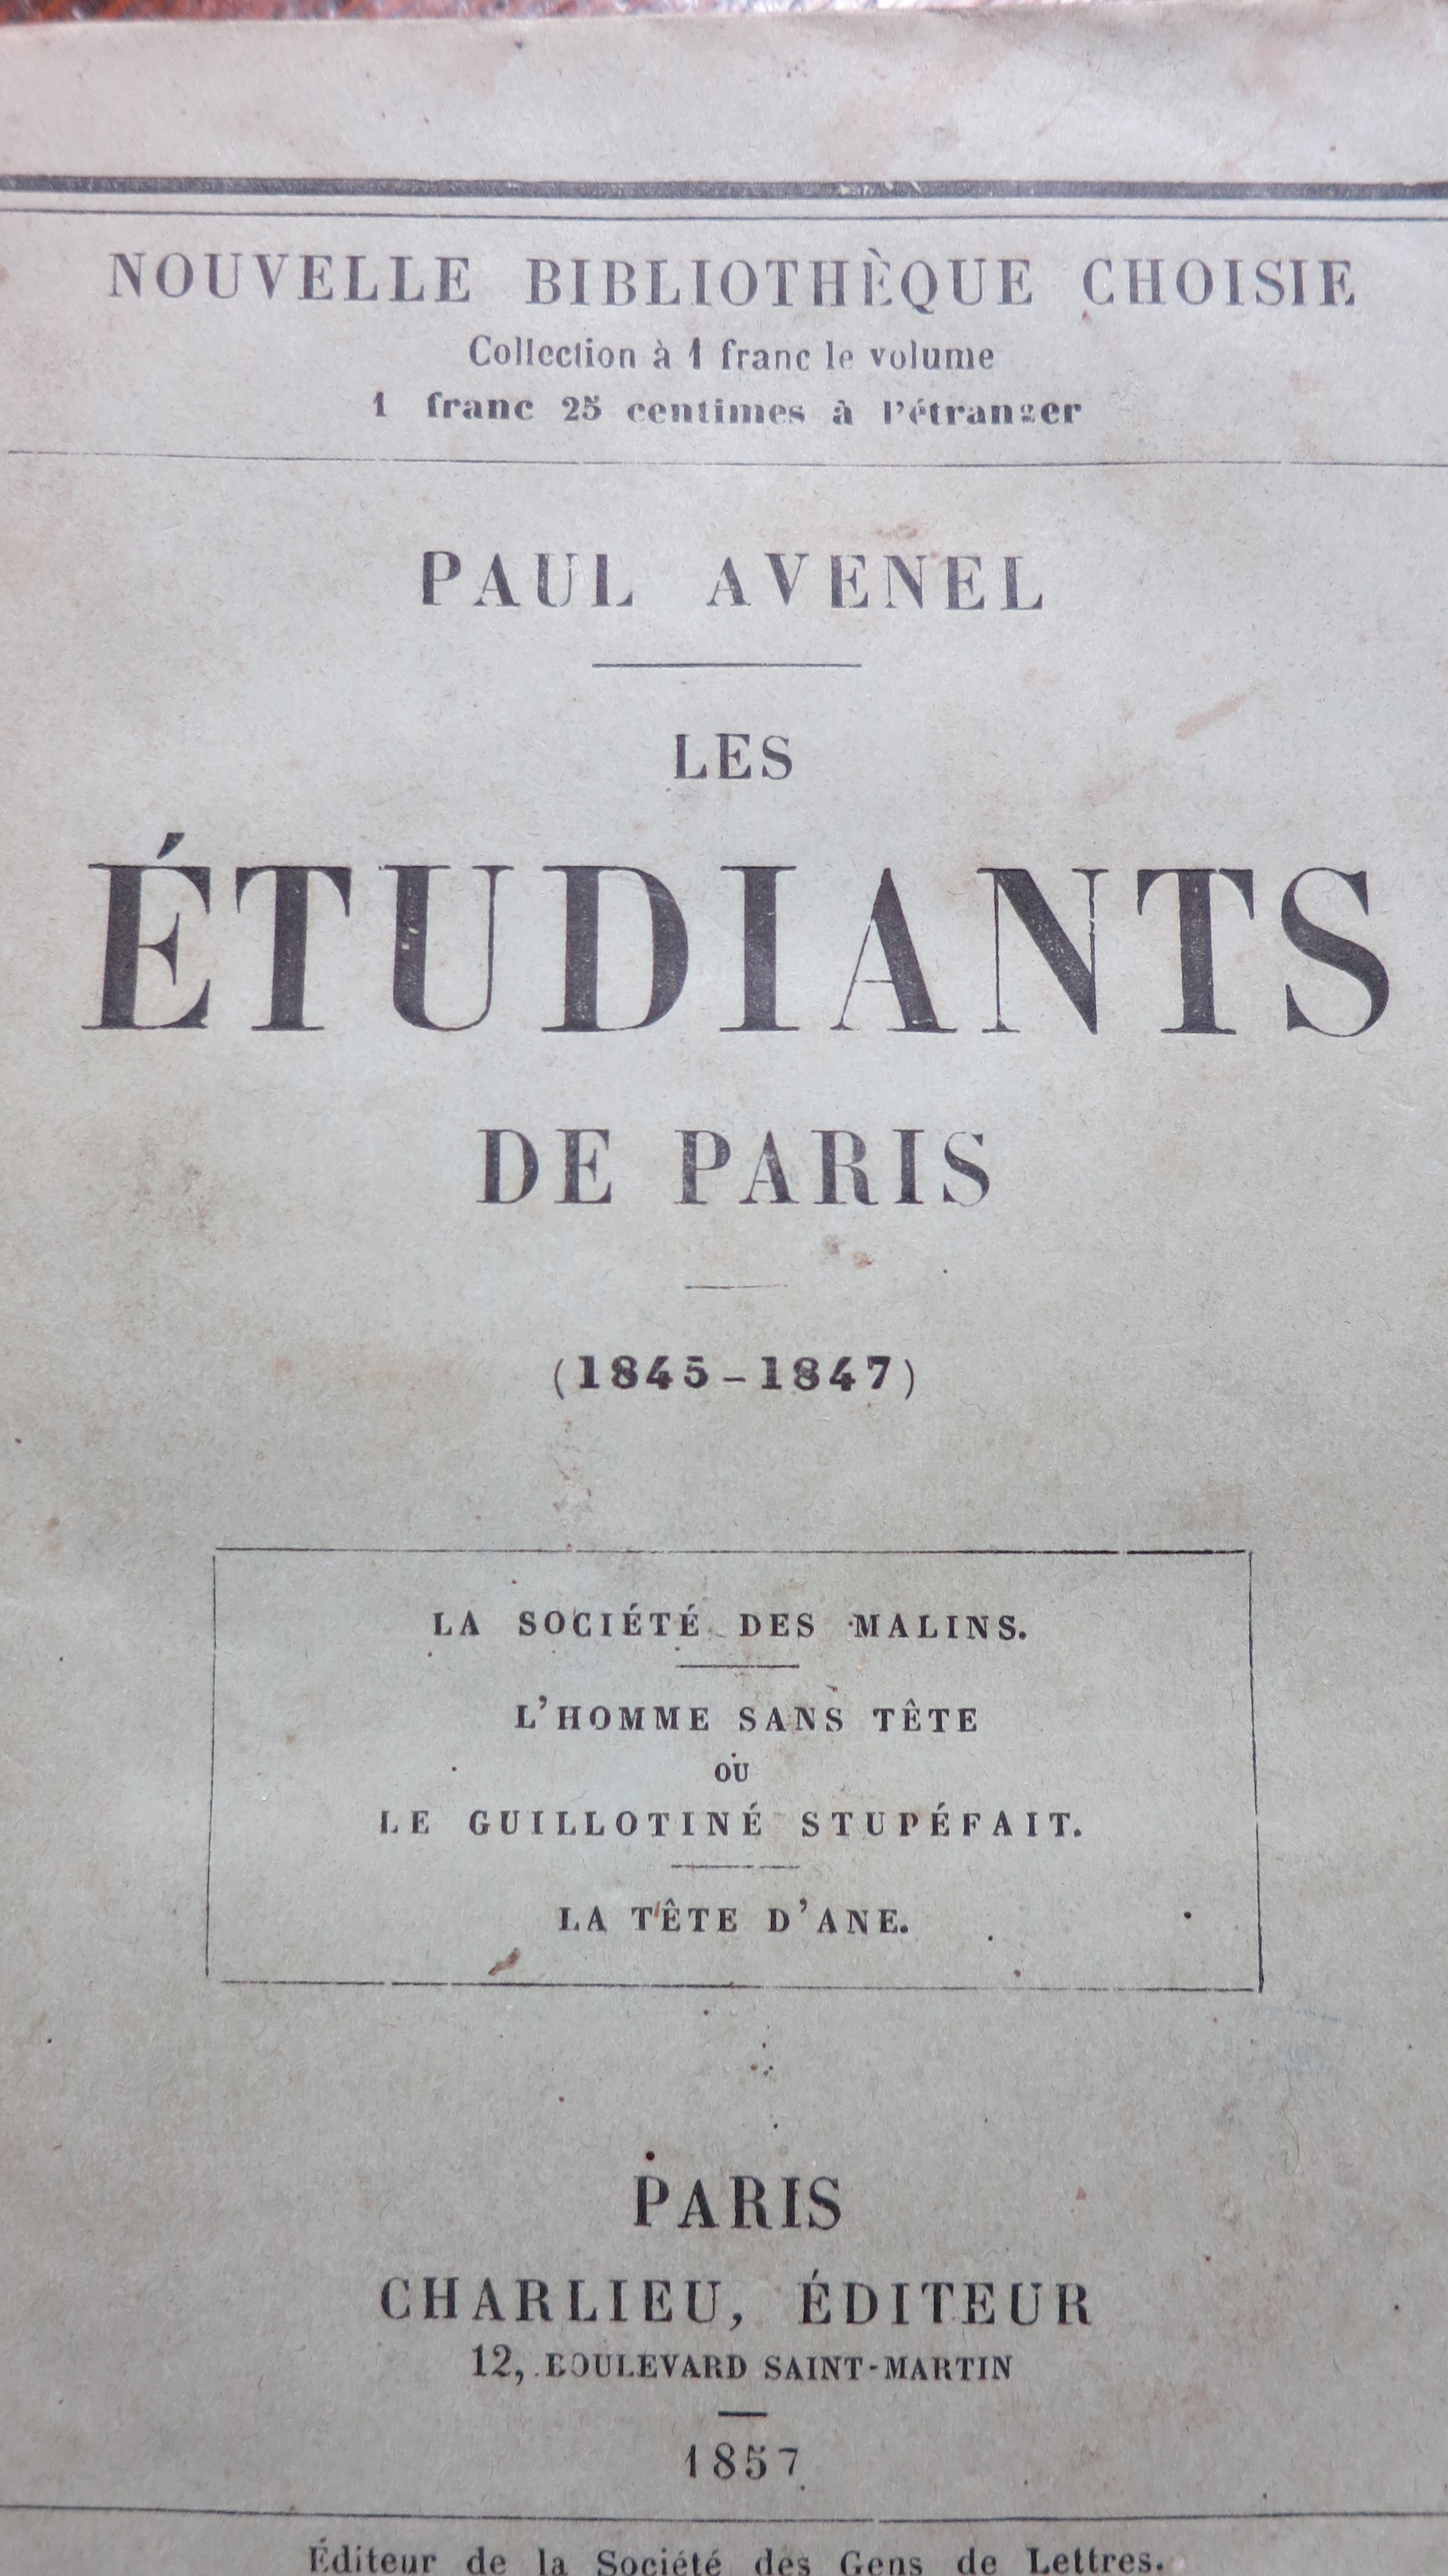 Les Etudiants de Paris (1845-1847)